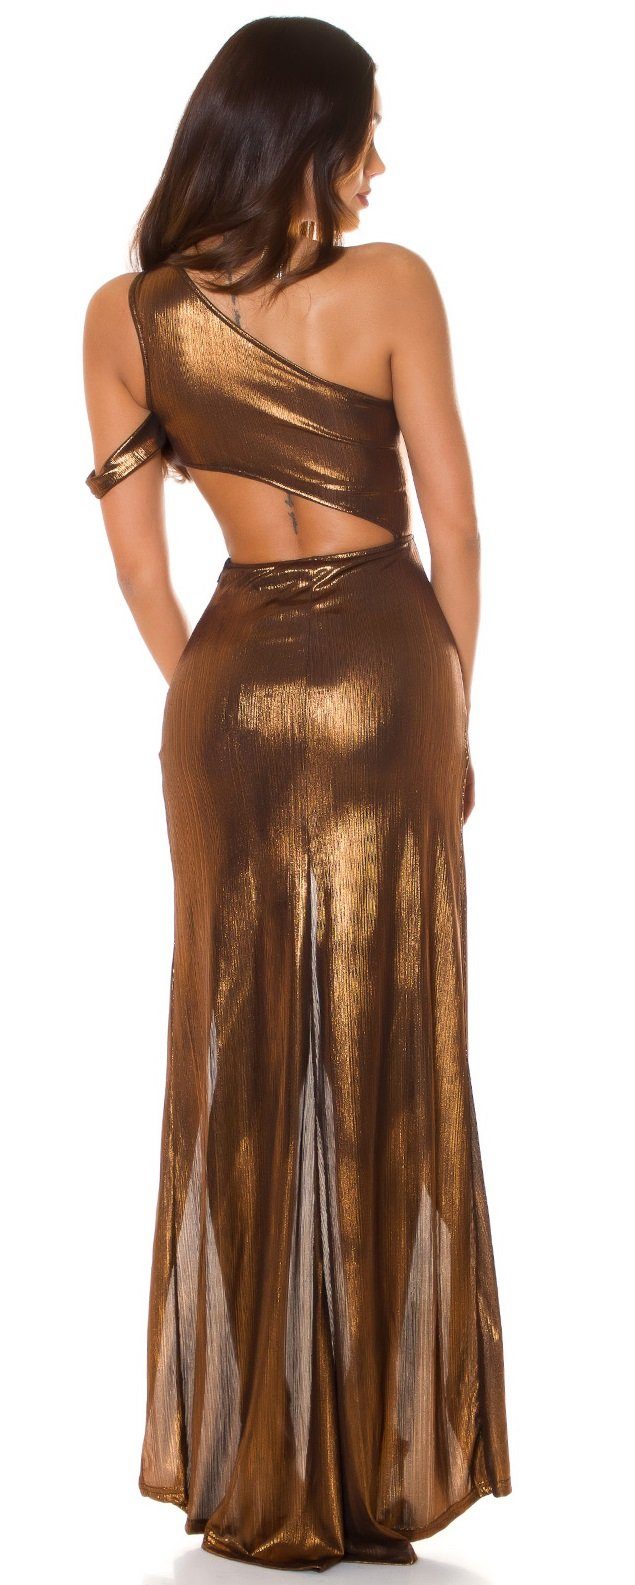 Koucla raffiniert sexy bronze Gala Abendkleid geschnitten,